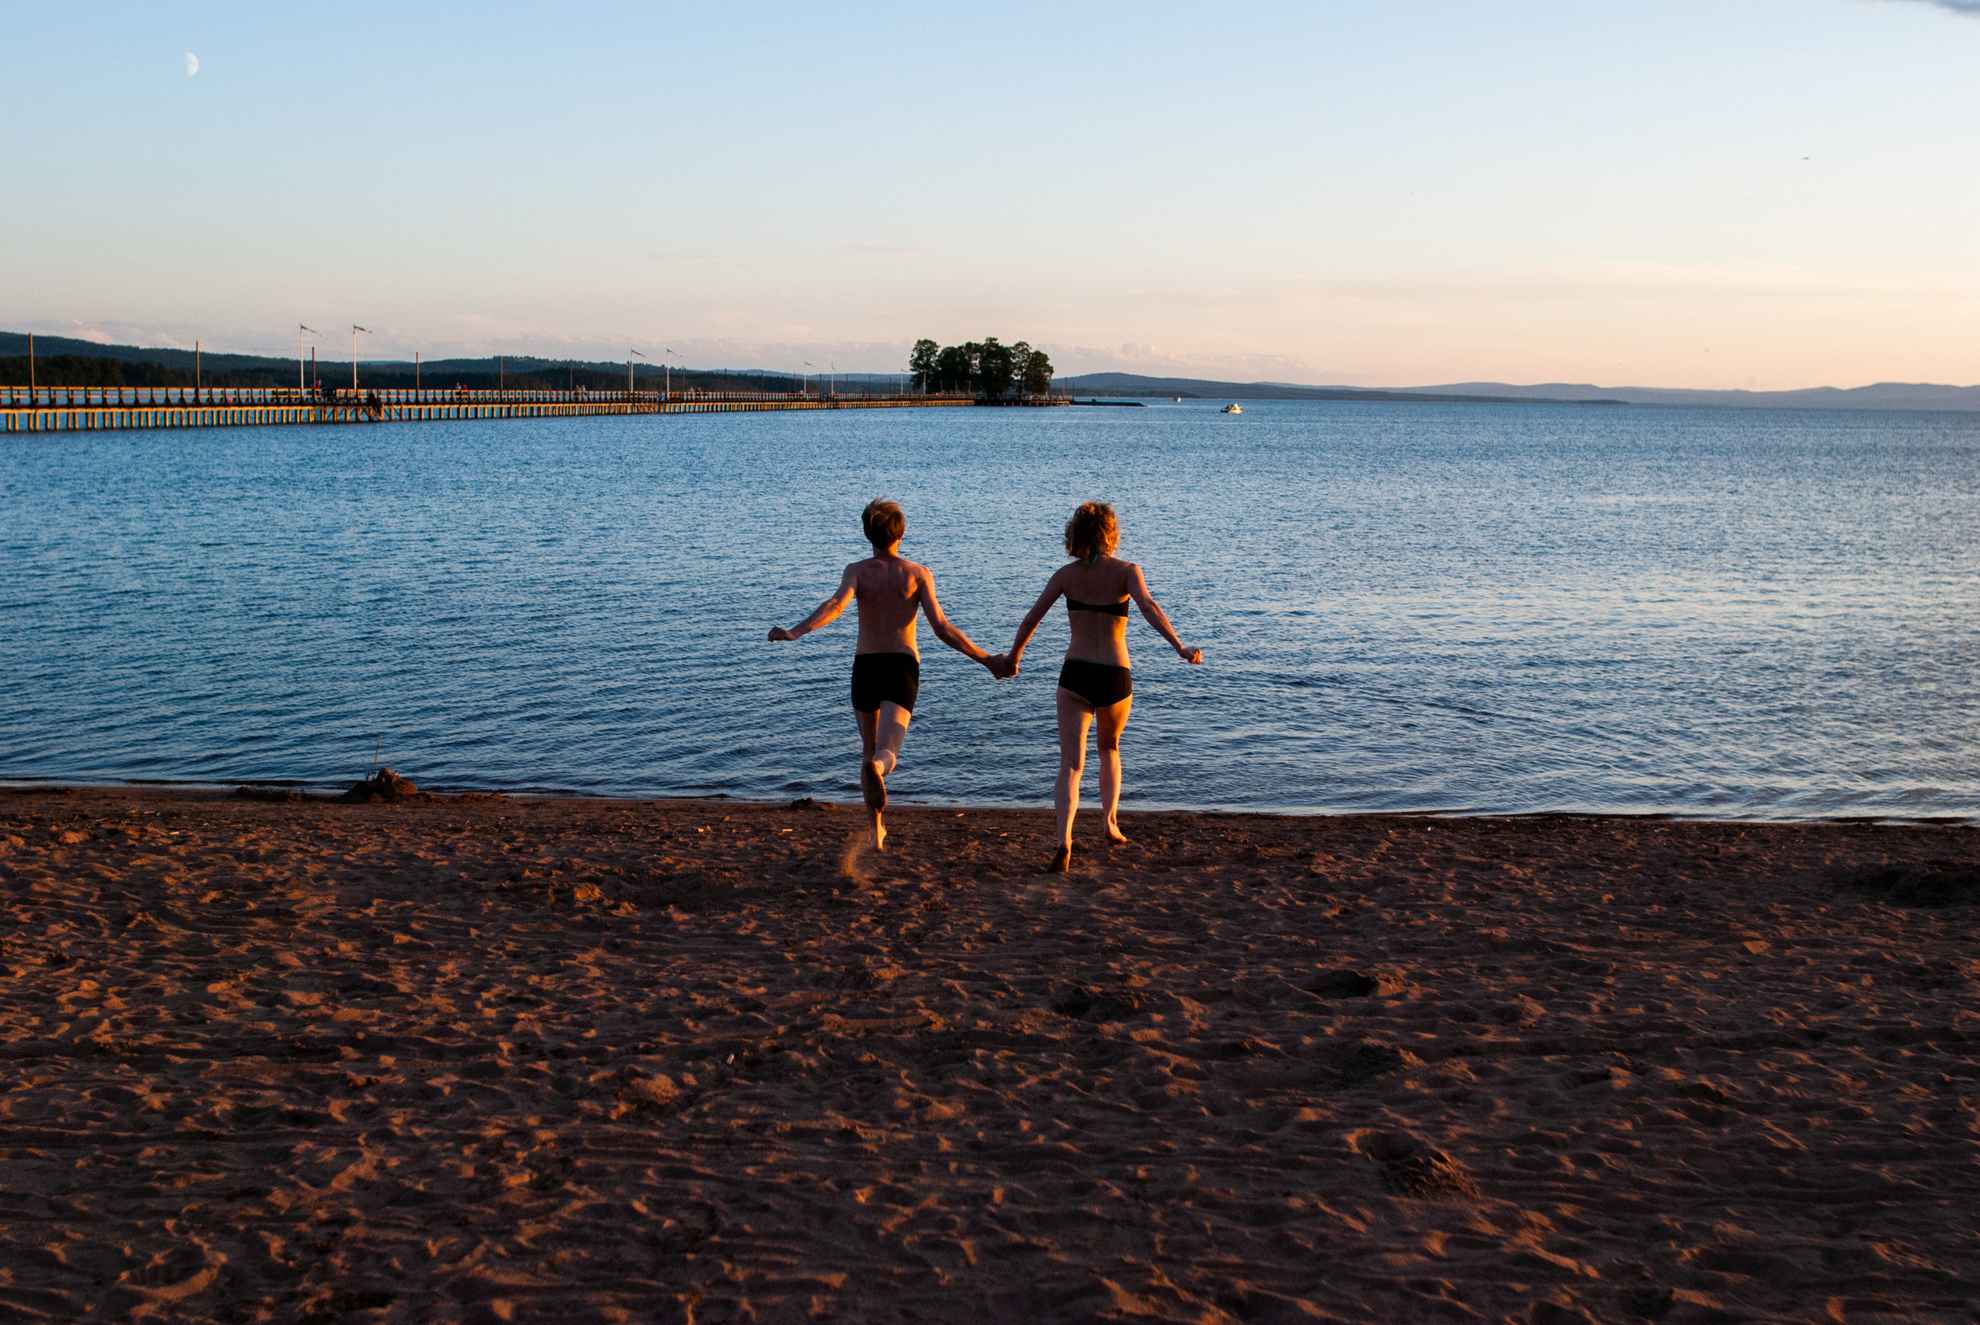 Zwei Personen in Badeanzügen laufen an einem Strand in Richtung Wasser.